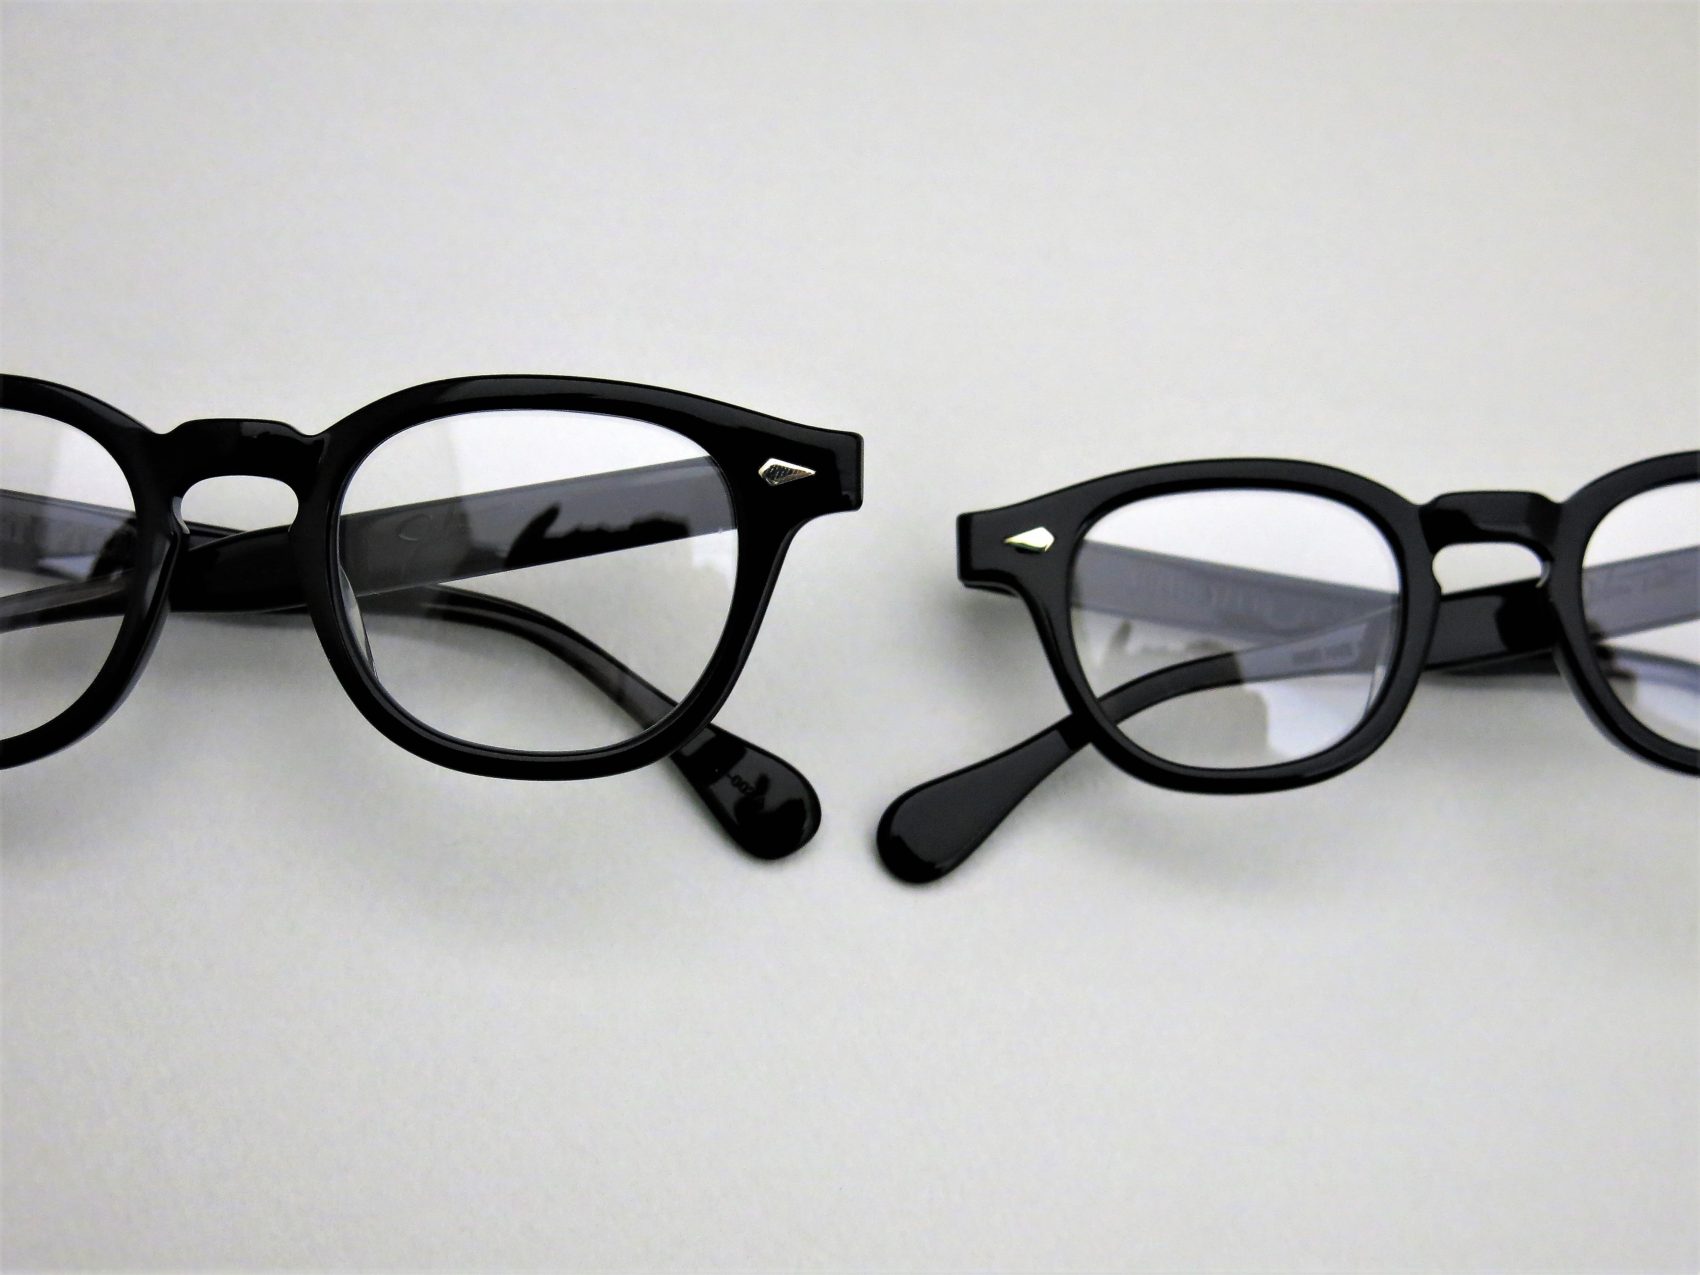 超高品質の販売 julius tart ブラック ar 42 optical サングラス/メガネ